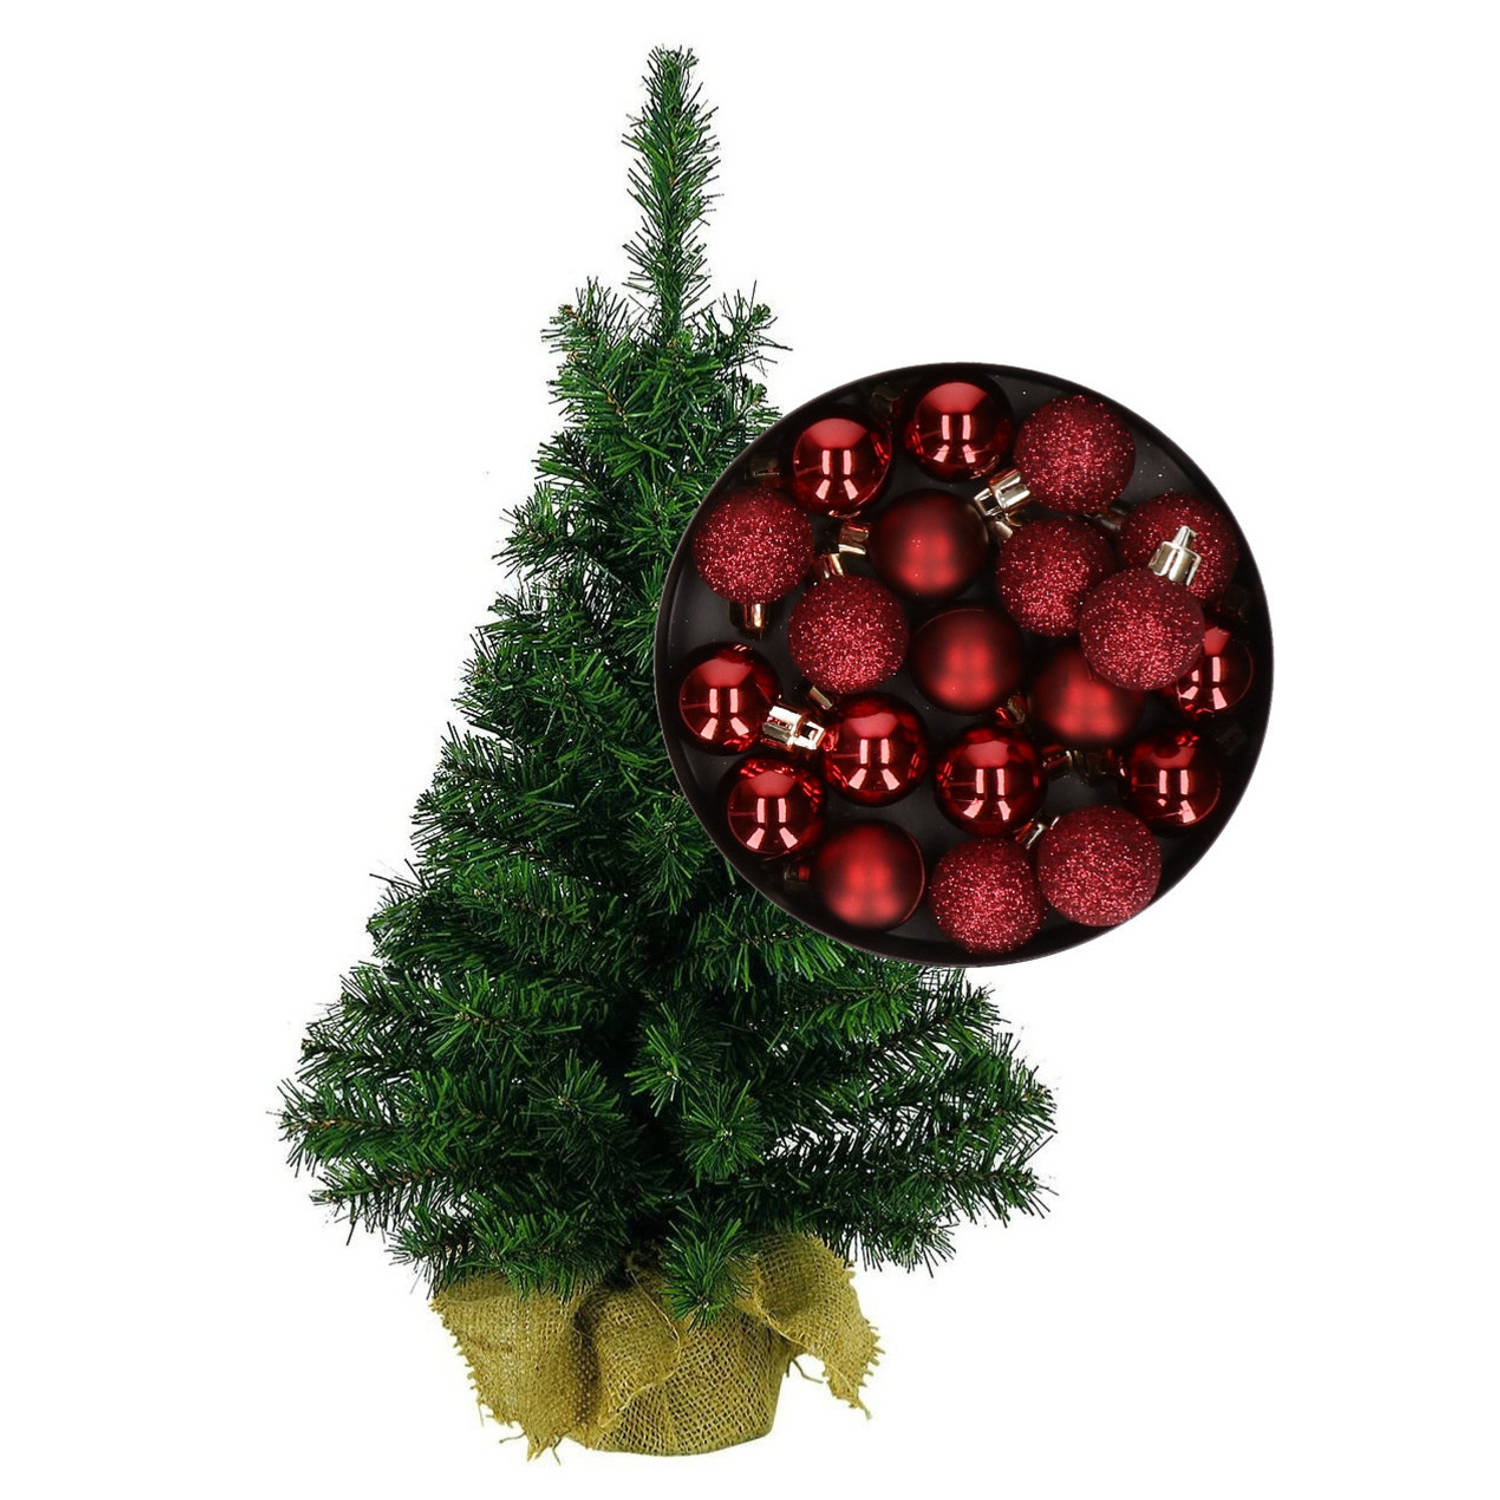 Mini kerstboom-kunst kerstboom H75 cm inclusief kerstballen donkerrood Kunstkerstboom